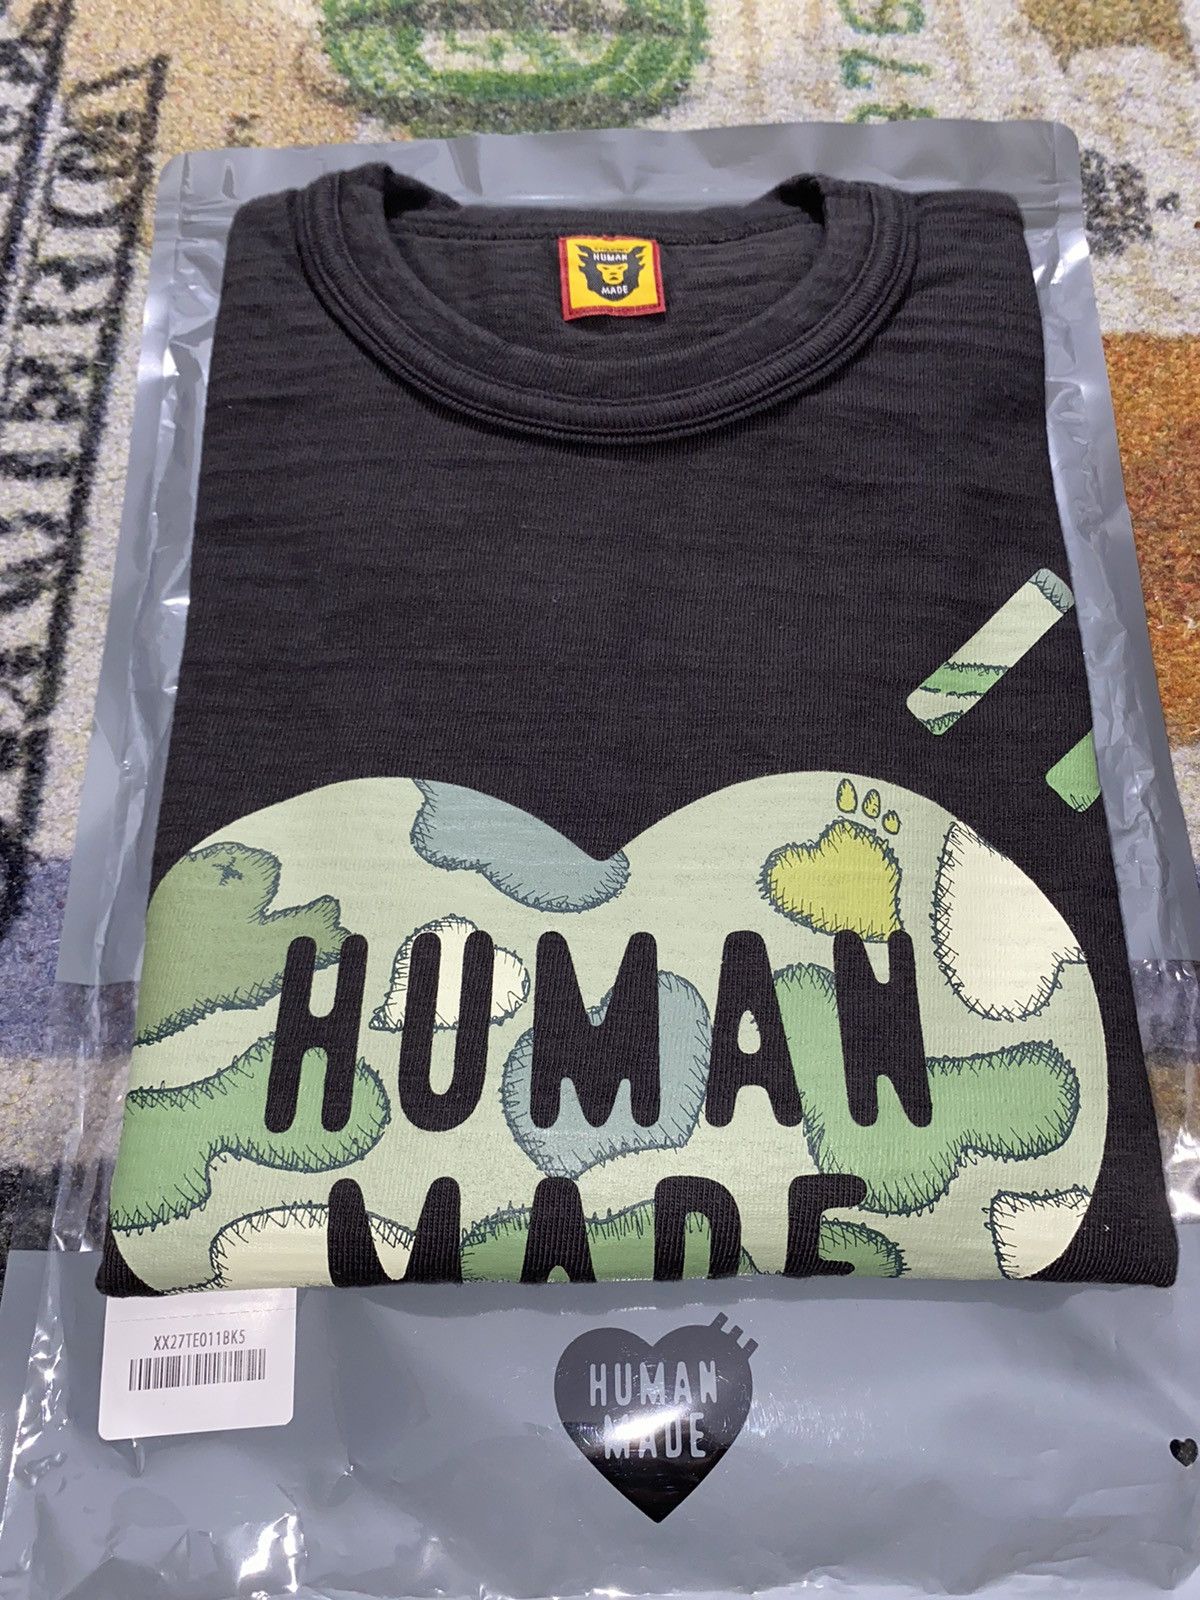 トップスHuman Made KAWS Made Graphic T-Shirt 2XL